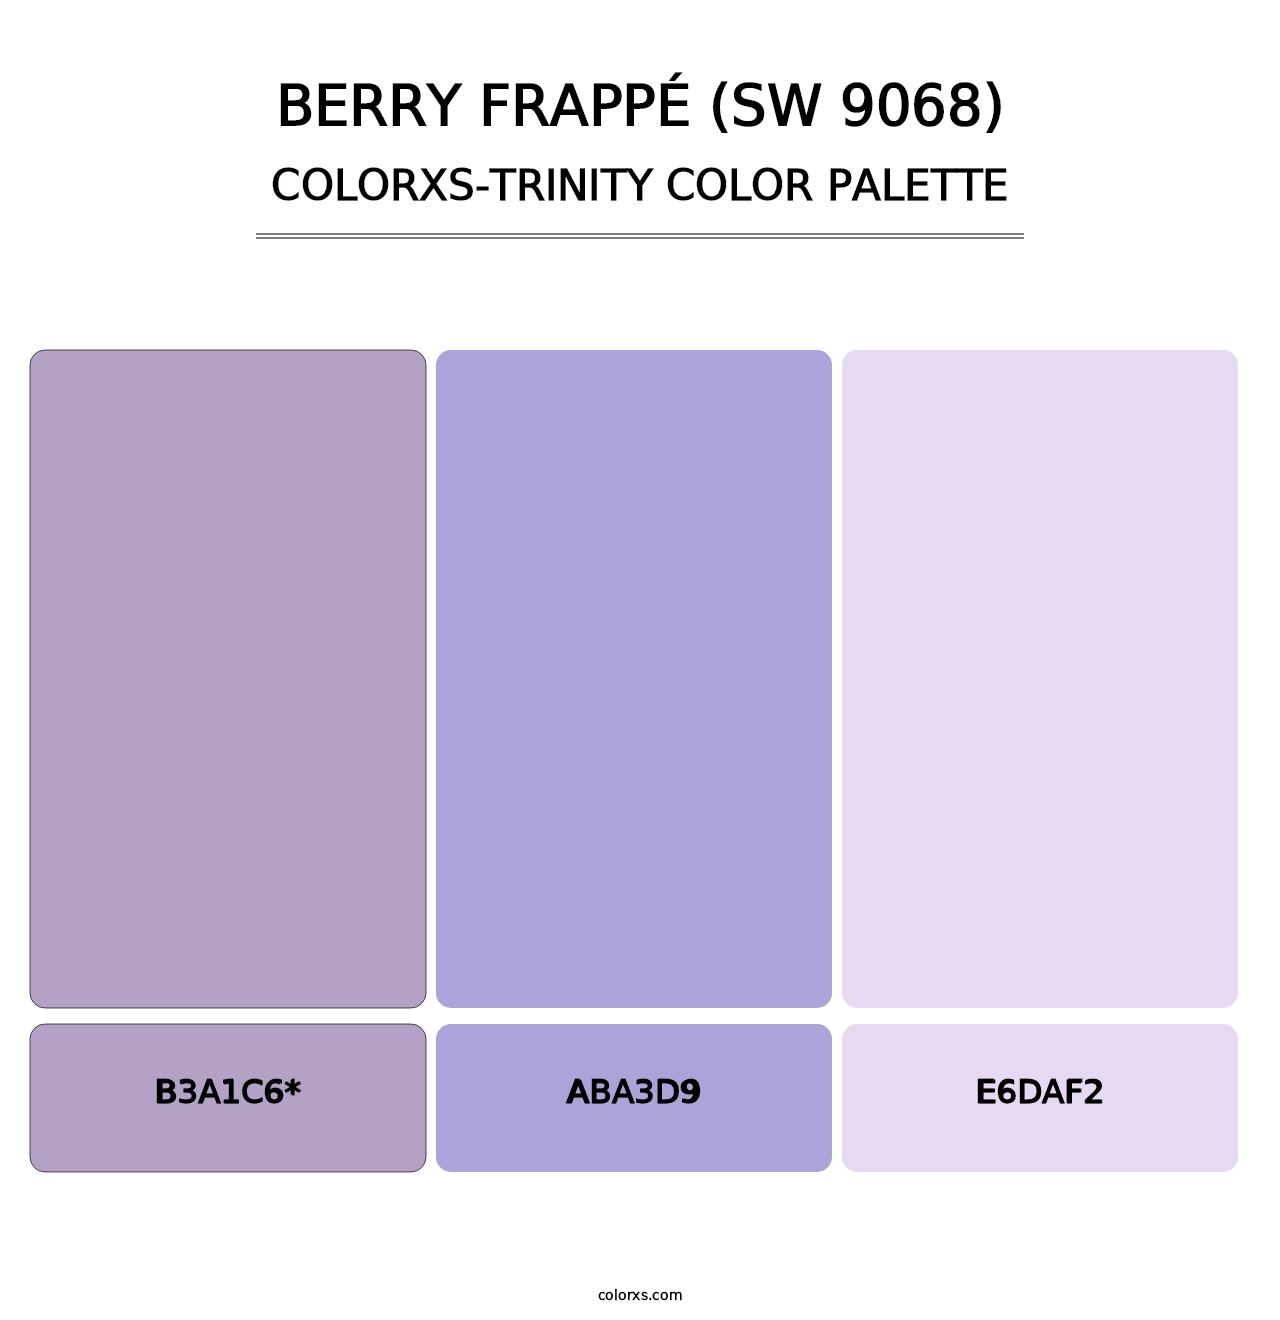 Berry Frappé (SW 9068) - Colorxs Trinity Palette